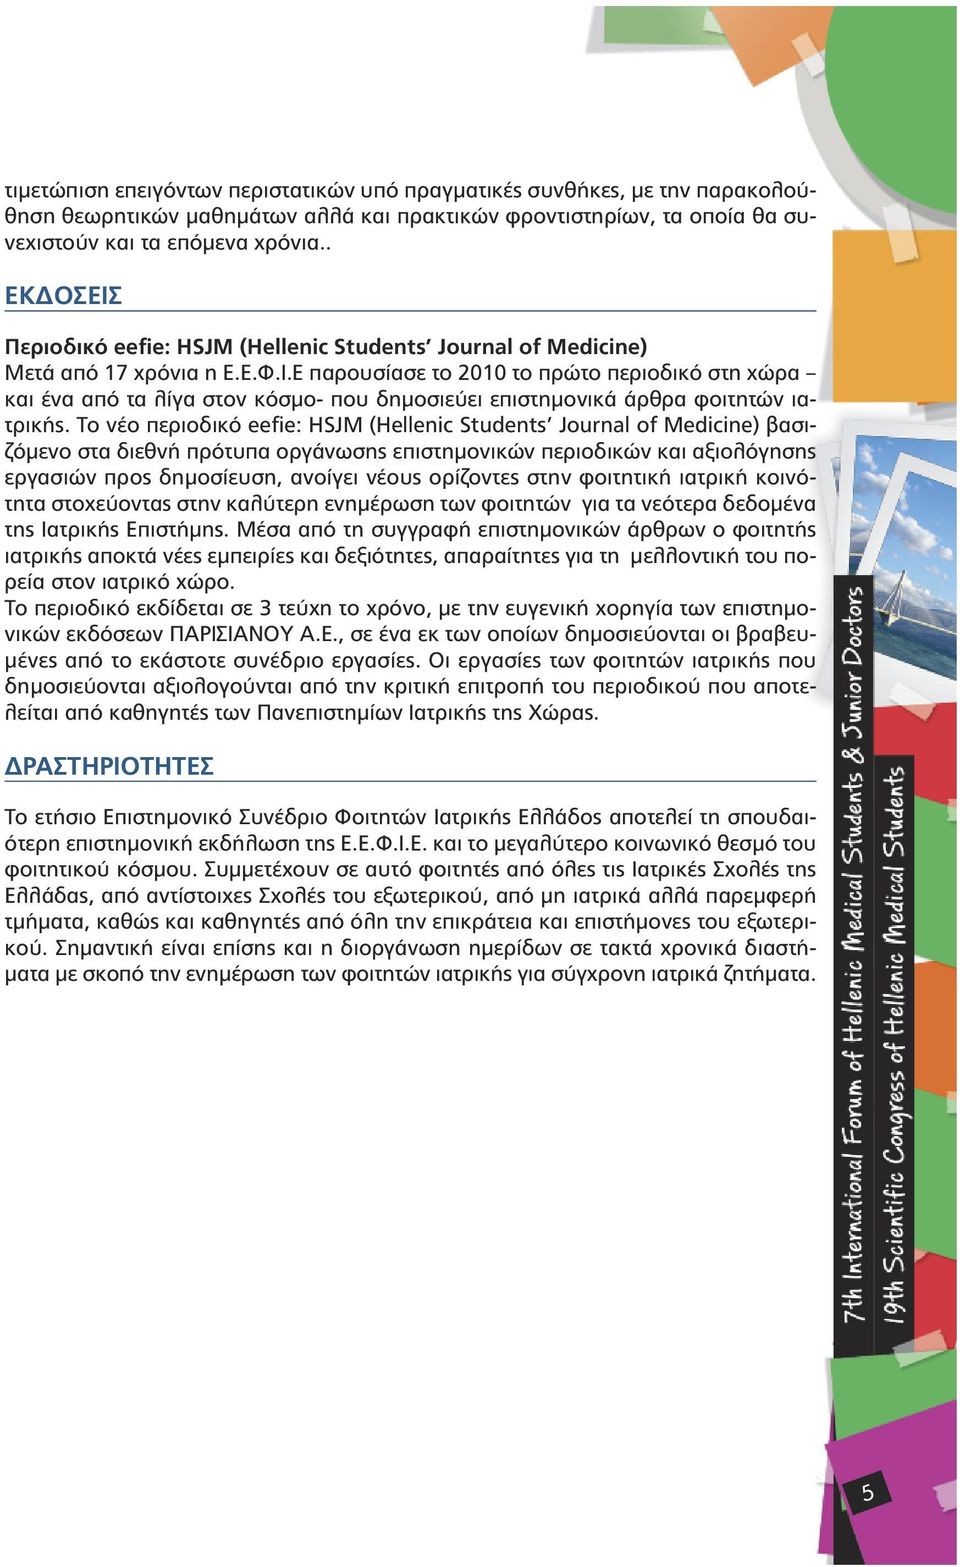 Το νέο περιοδικό eefie: HSJM (Hellenic Students Journal of Medicine) βασιζόµενο στα διεθνή πρότυπα οργάνωσης επιστηµονικών περιοδικών και αξιολόγησης εργασιών προς δηµοσίευση, ανοίγει νέους ορίζοντες